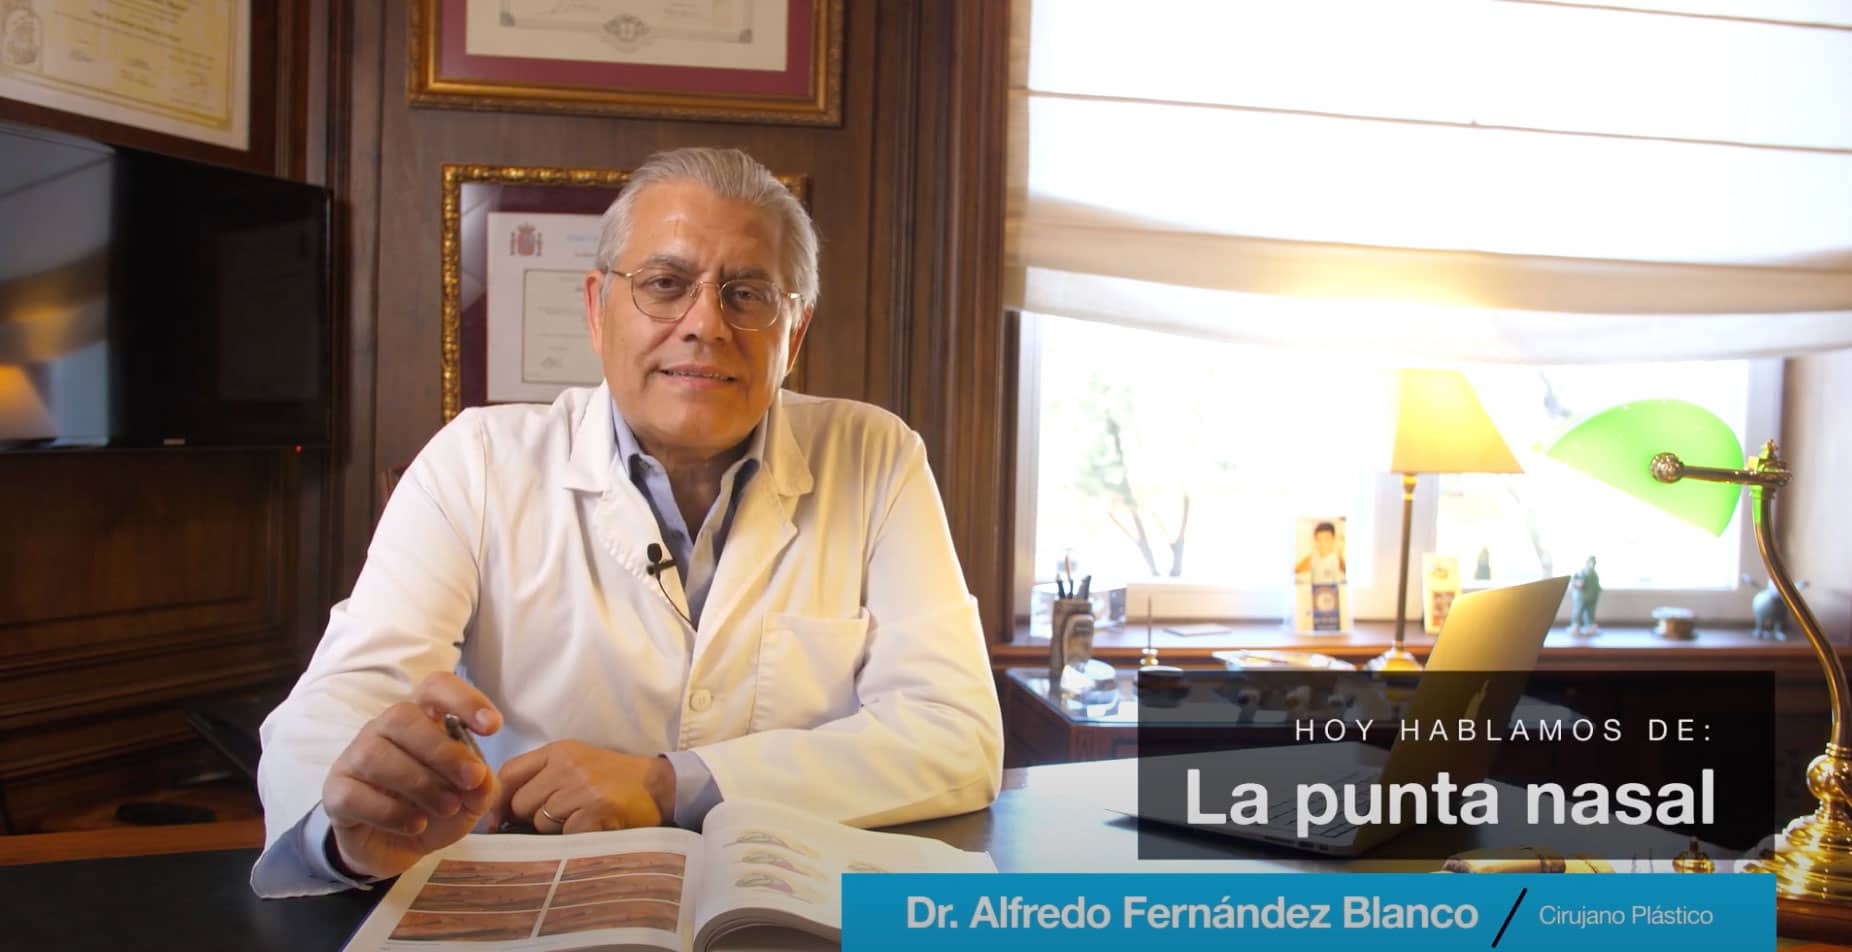 Videoblog del doctor Fernández Blanco acerca de la punta nasal en las rinoplastias